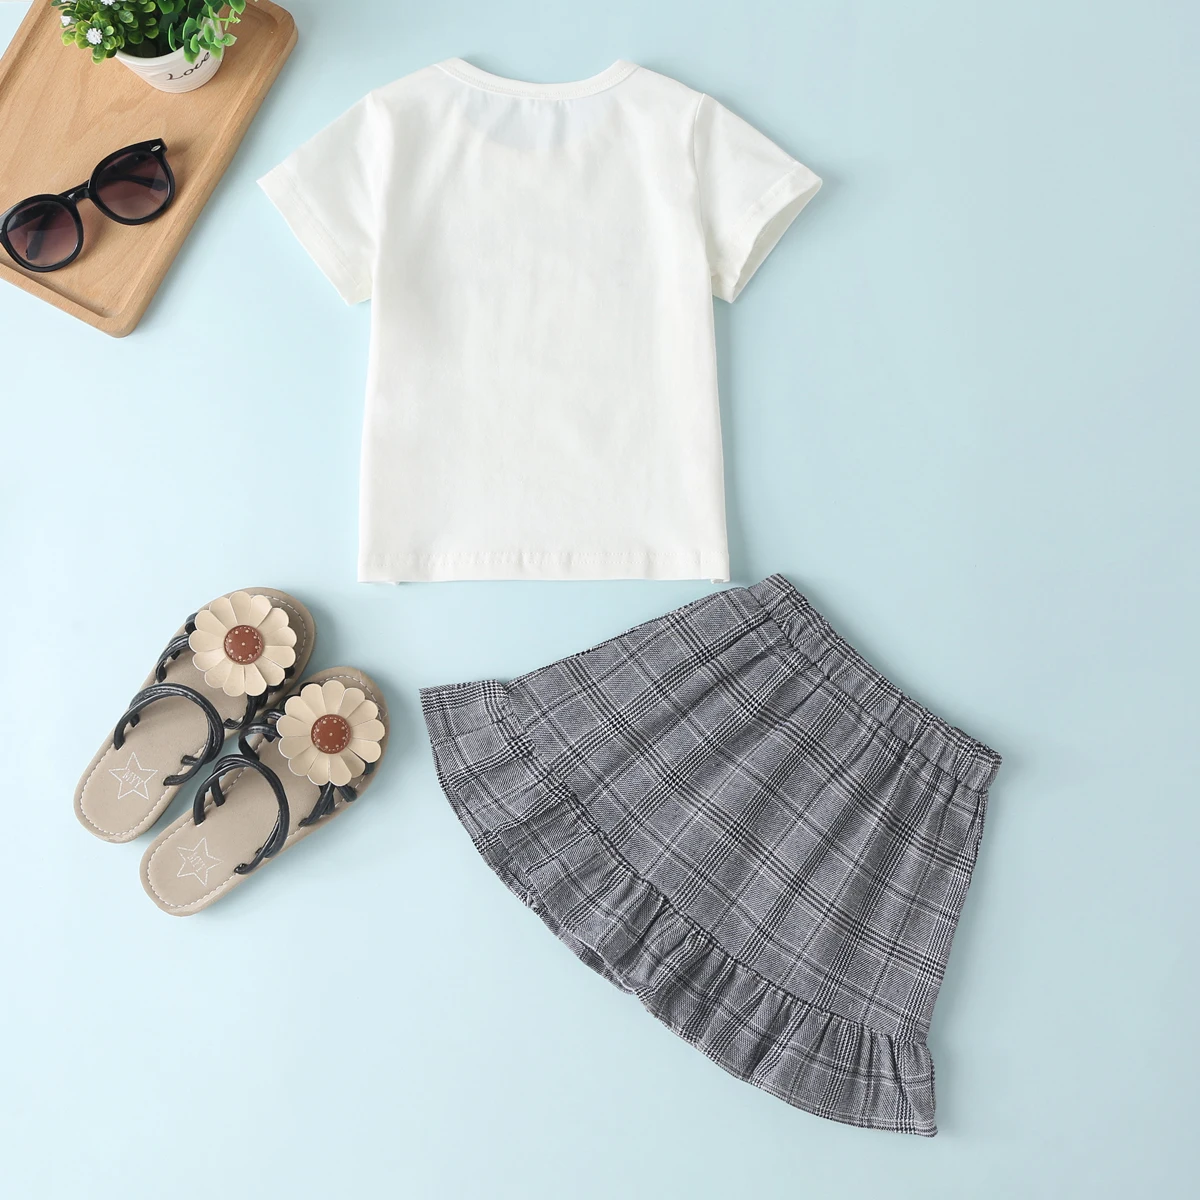 CANIS/комплект летней одежды для маленьких девочек; футболка с короткими рукавами; топы; клетчатая юбка с оборками и пуговицами; короткое платье; От 1 до 6 лет одежды